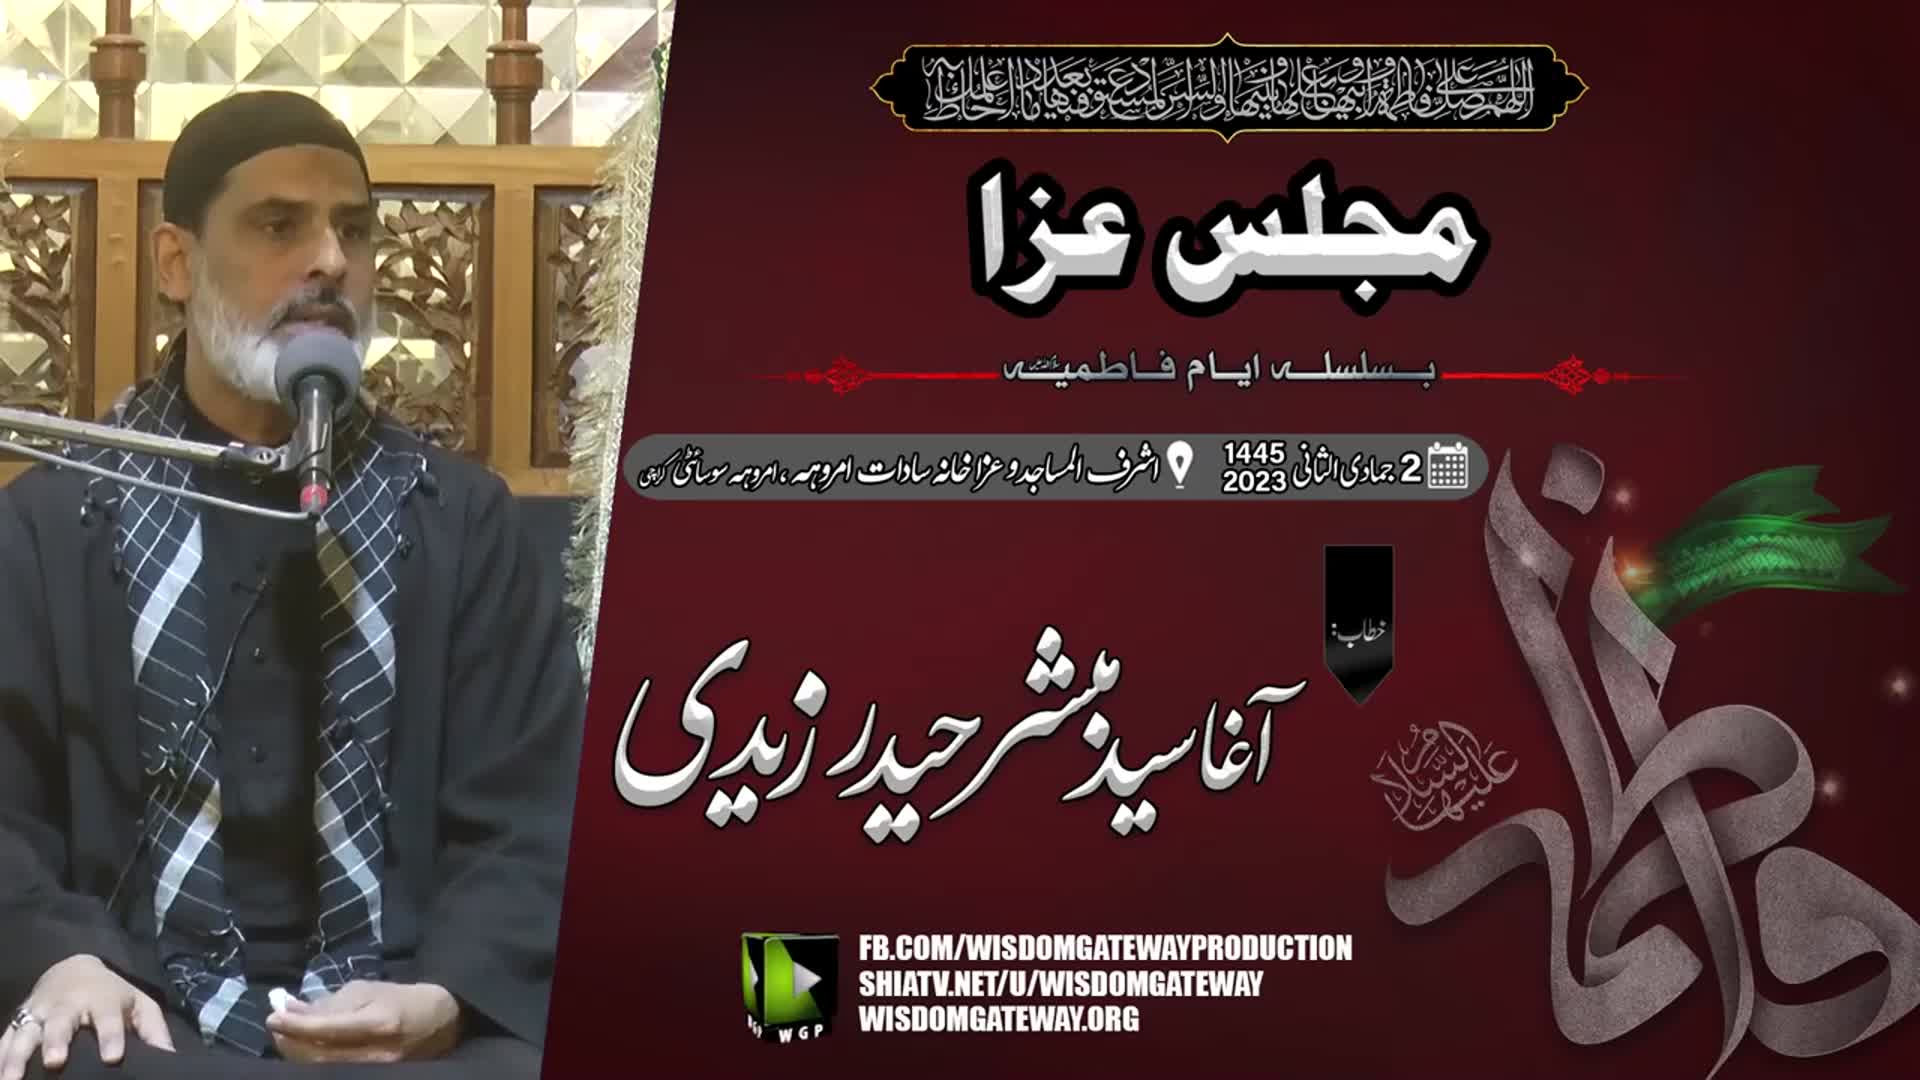 [Majlis Ayyam e Fatemiyah 1445] Agha Syed Mubashir Haider Zaidi | Ashraful Masjid o Azakhana Sadaat e Amroha | Karachi | 16 December 2023 | Urdu